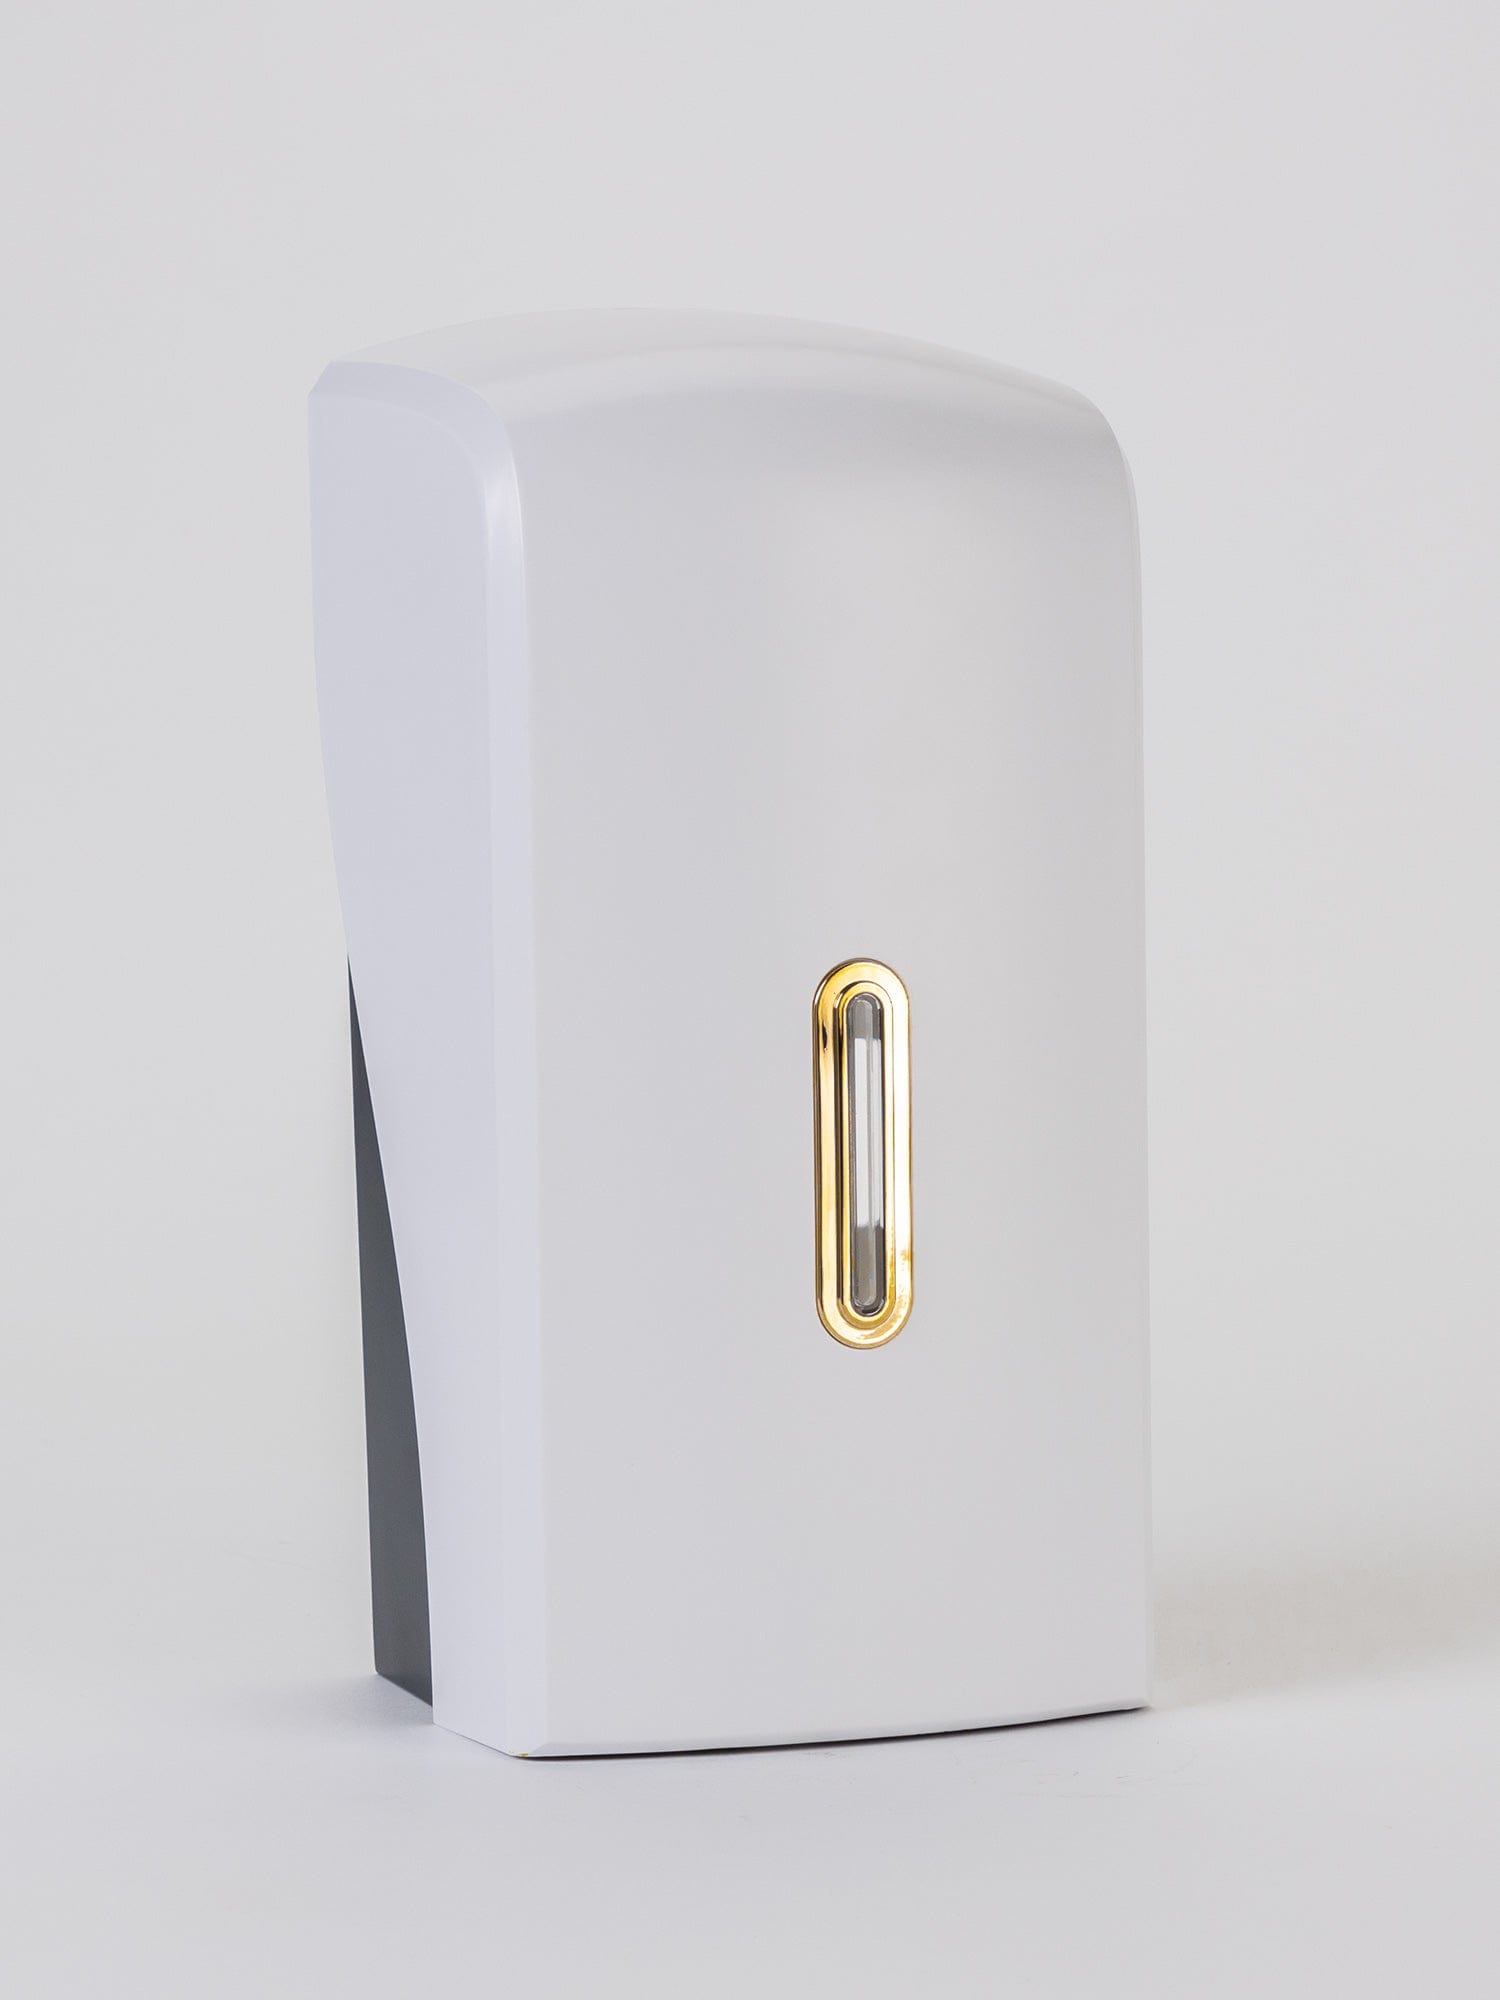 gold halo bulk pack dispenser